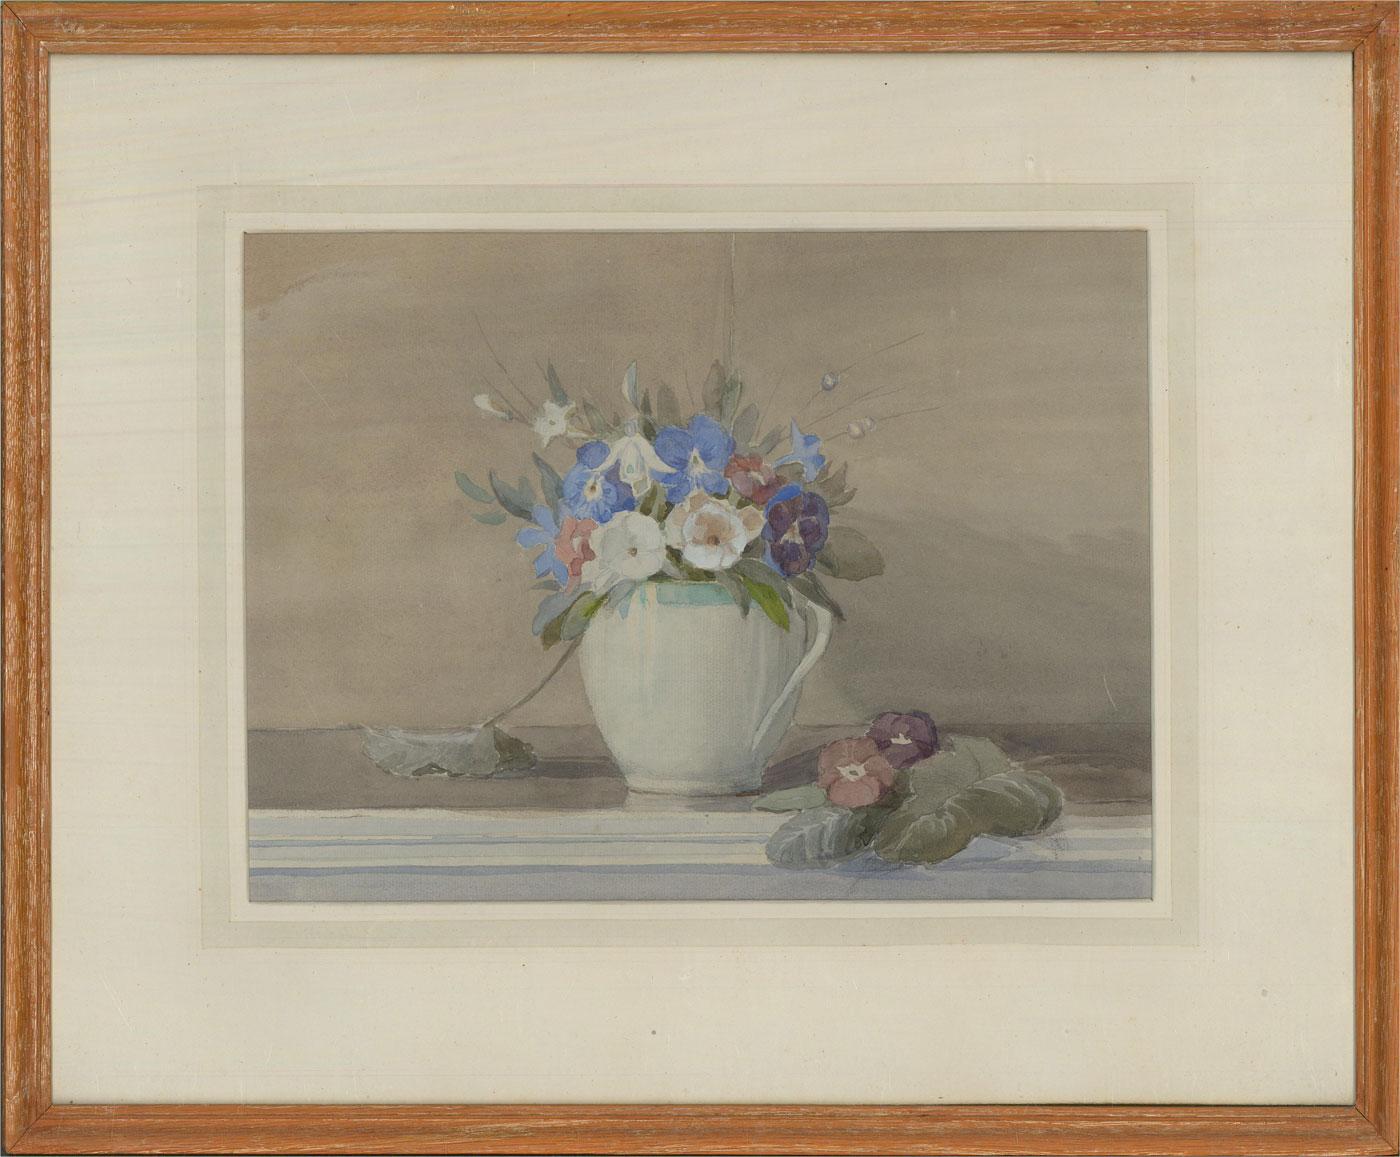 Une charmante aquarelle de fleurs fraîches de printemps présentée dans un pichet crème à bord bleu. La cruche a été soigneusement placée sur une table, les feuilles et les fleurs en excès étant laissées autour d'elle. Bien présenté dans une monture